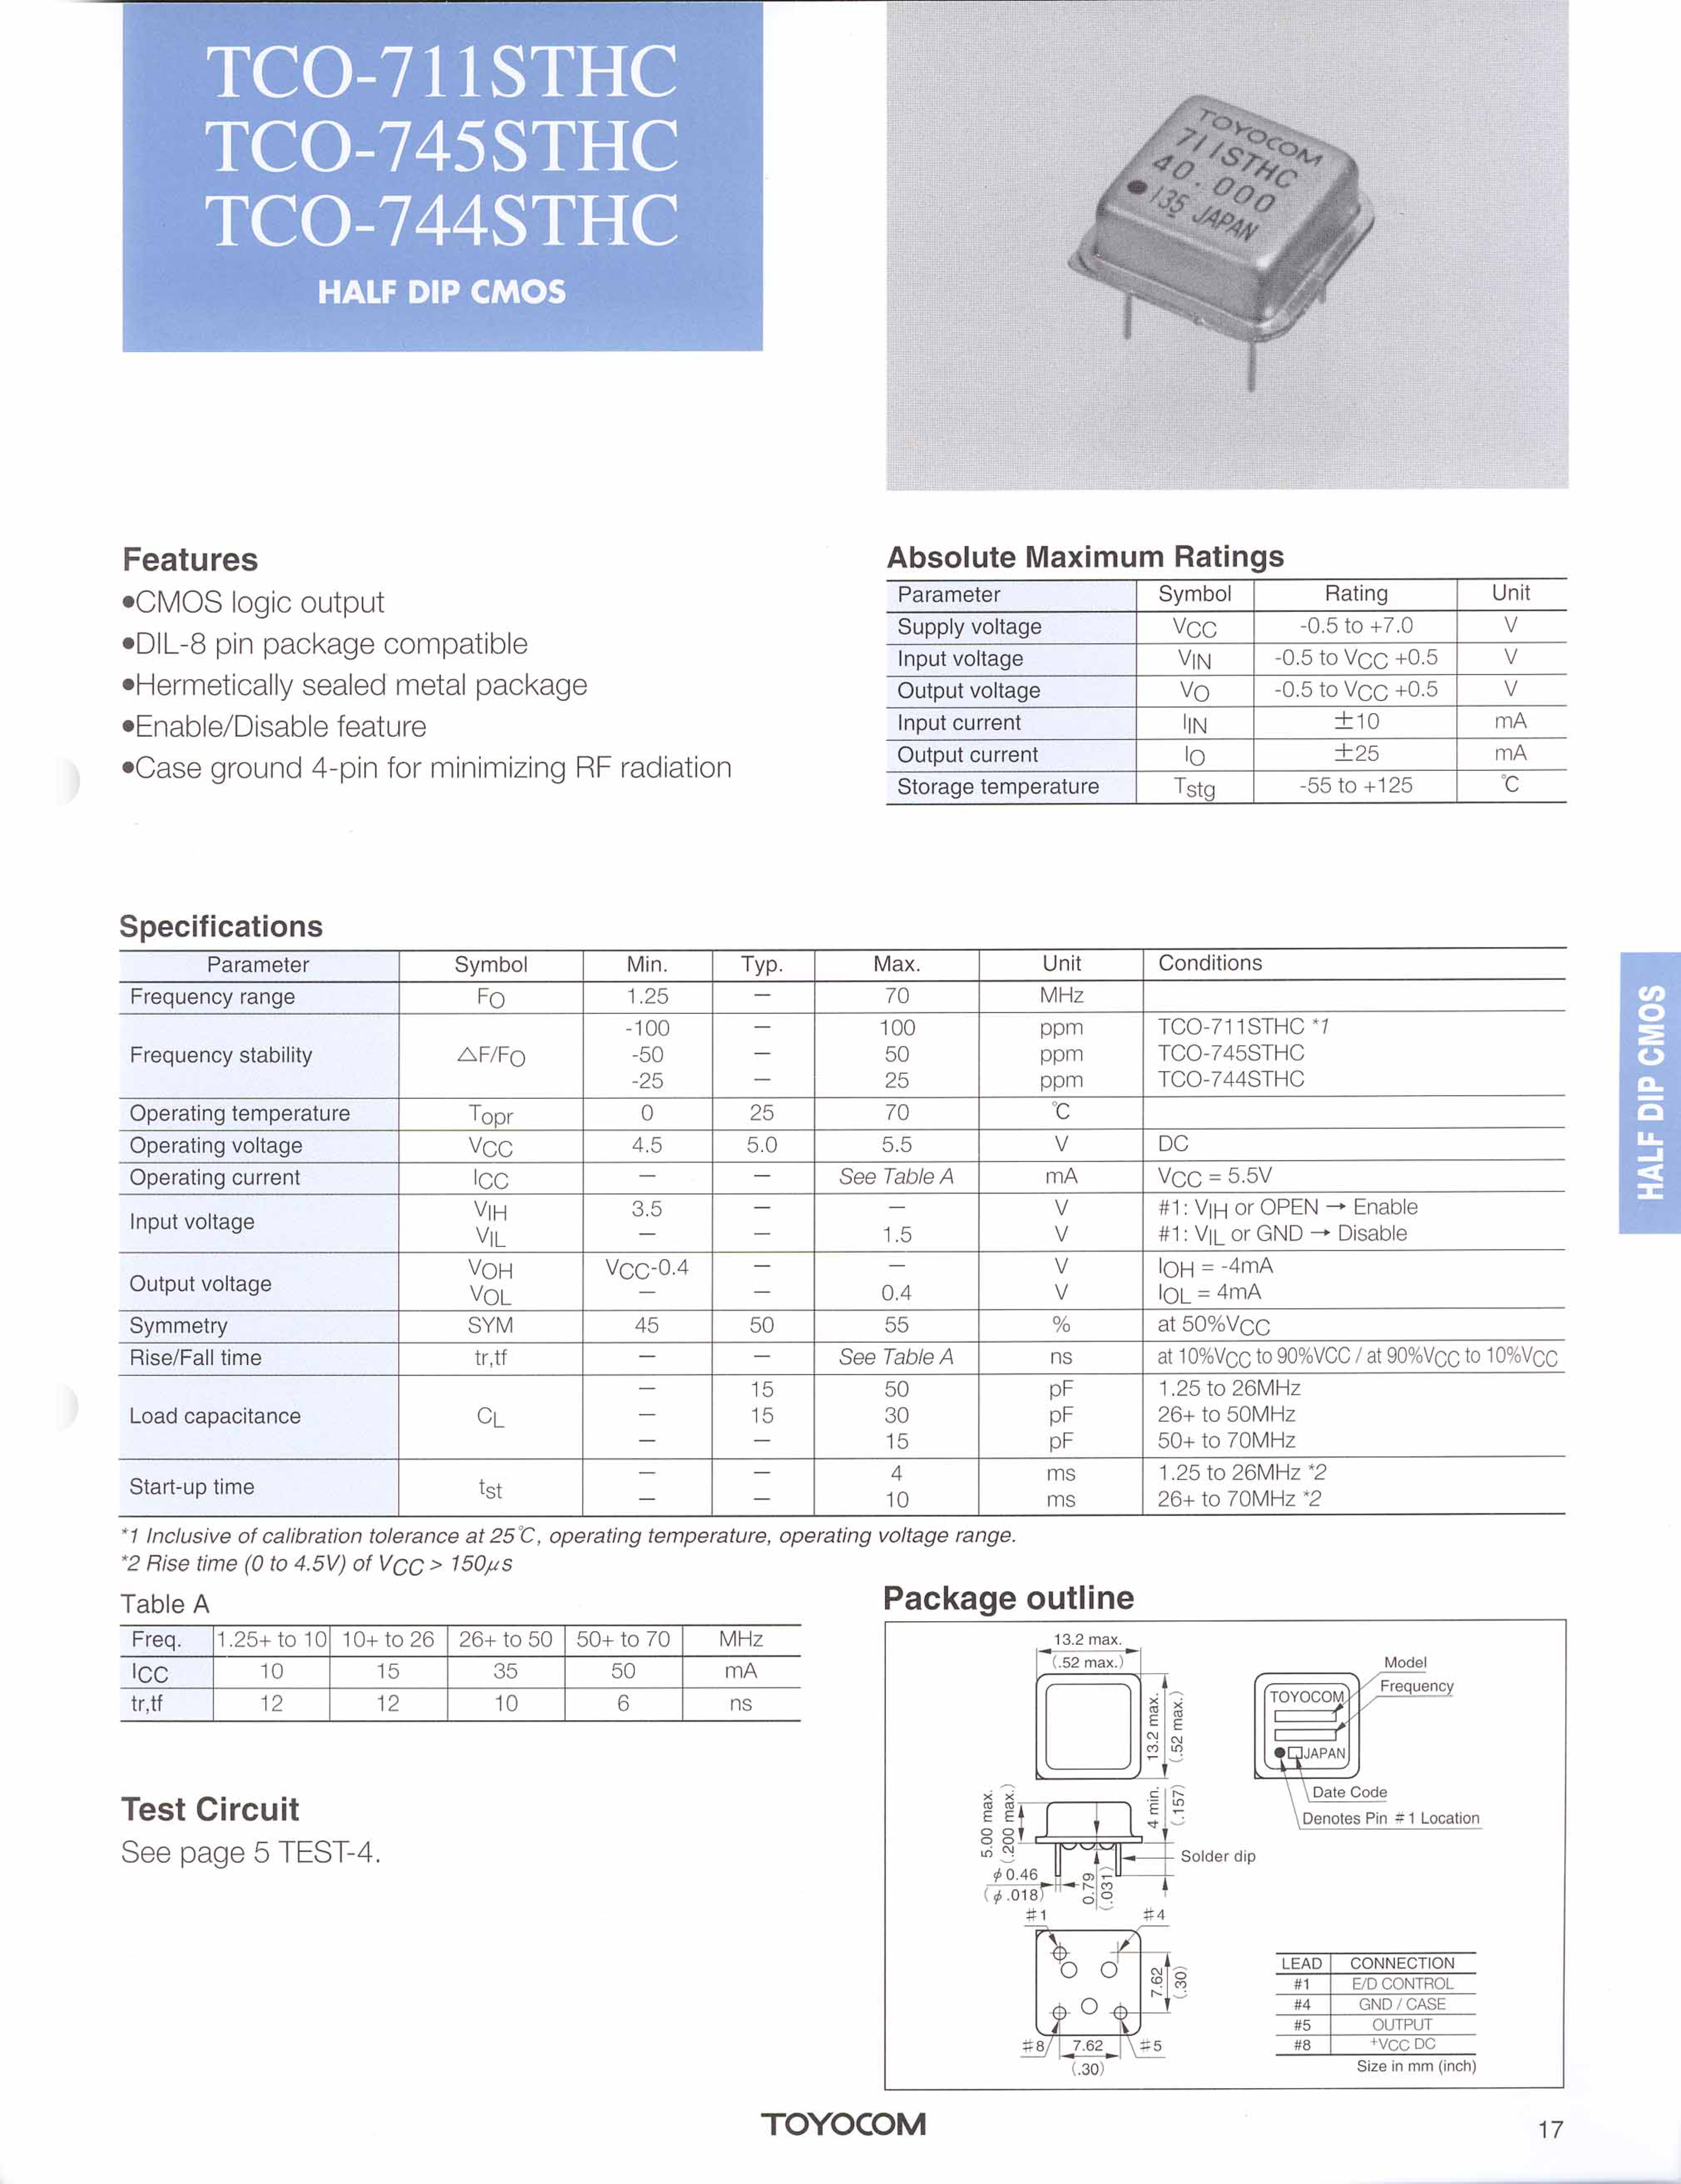 Datasheet TCO-711STHC - (TCO-711STHC - TCO-745STHC) COMS logic output page 1